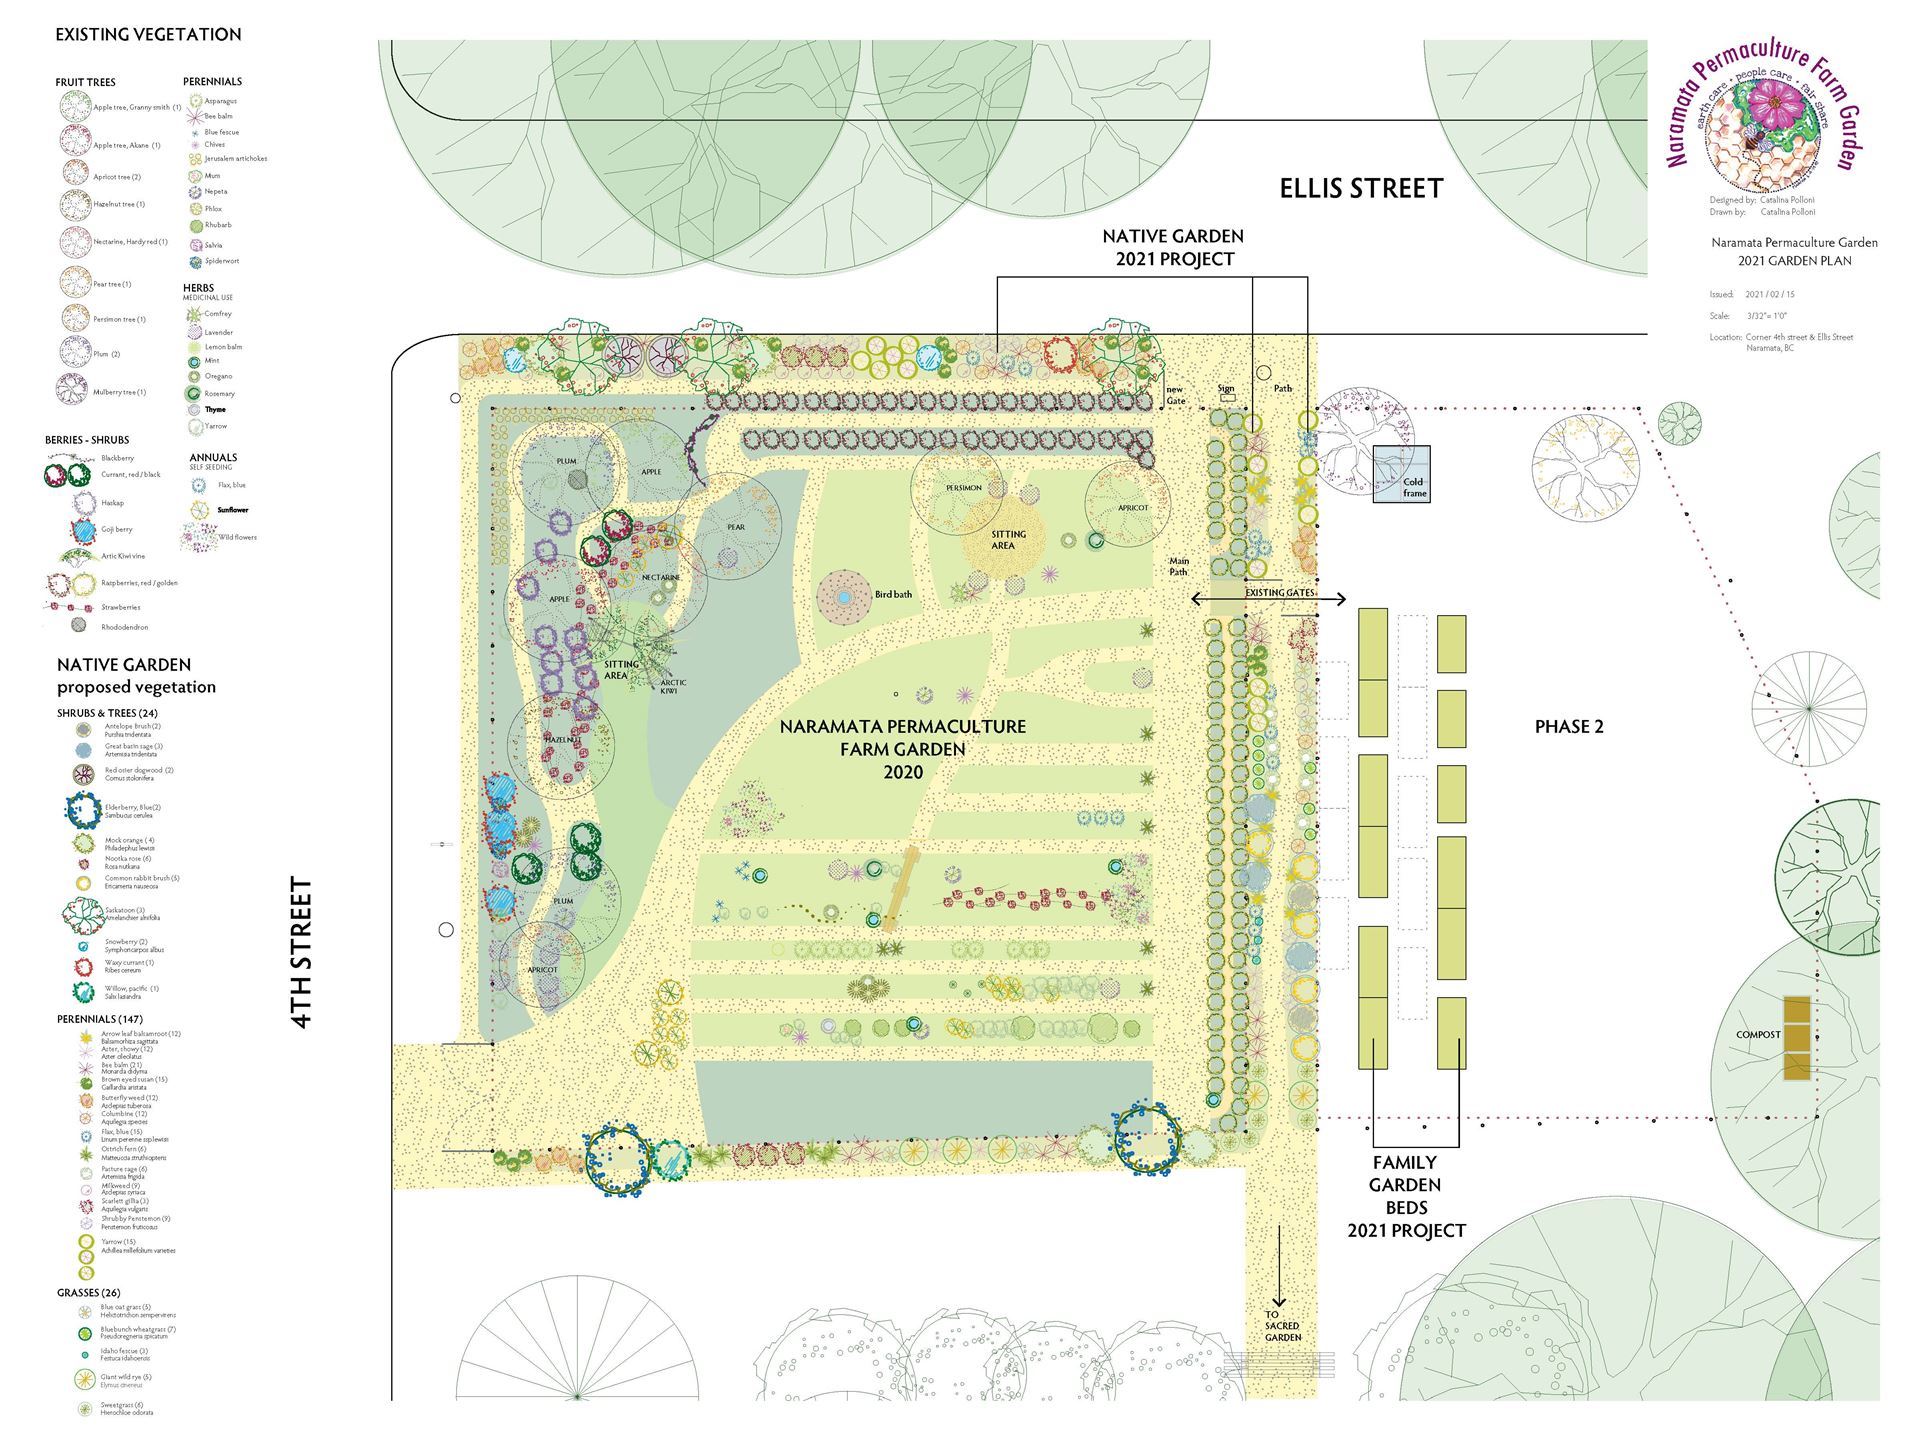 Original plan of the Naramata Permaculture Farm Garden